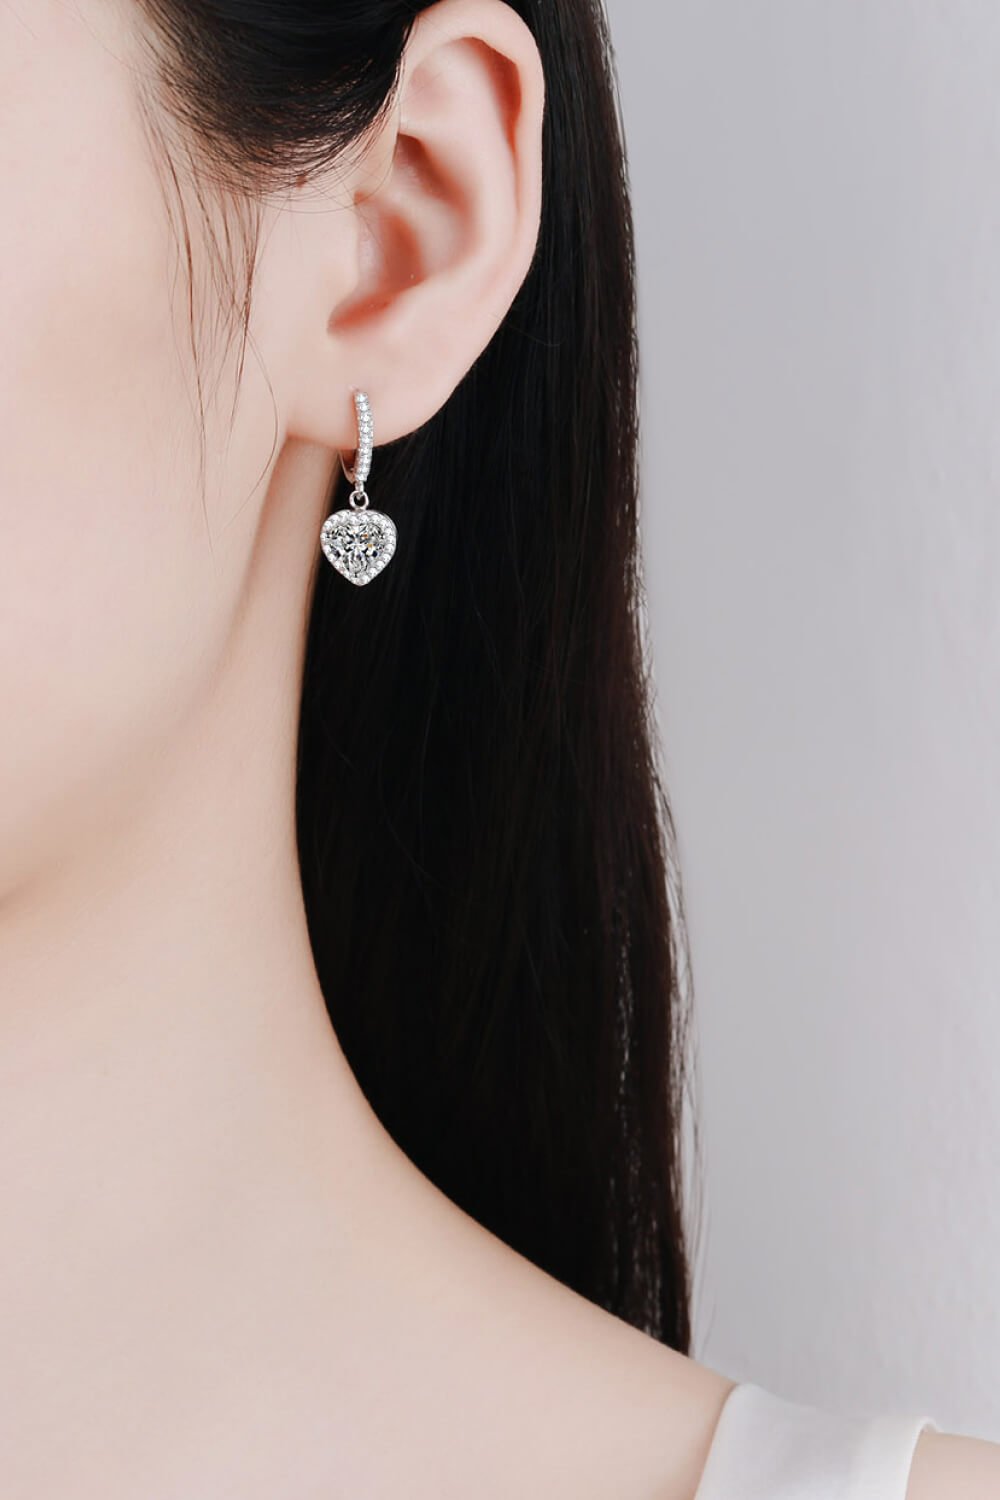 2 Carat Moissanite Women's Heart-Shaped Drop Earrings